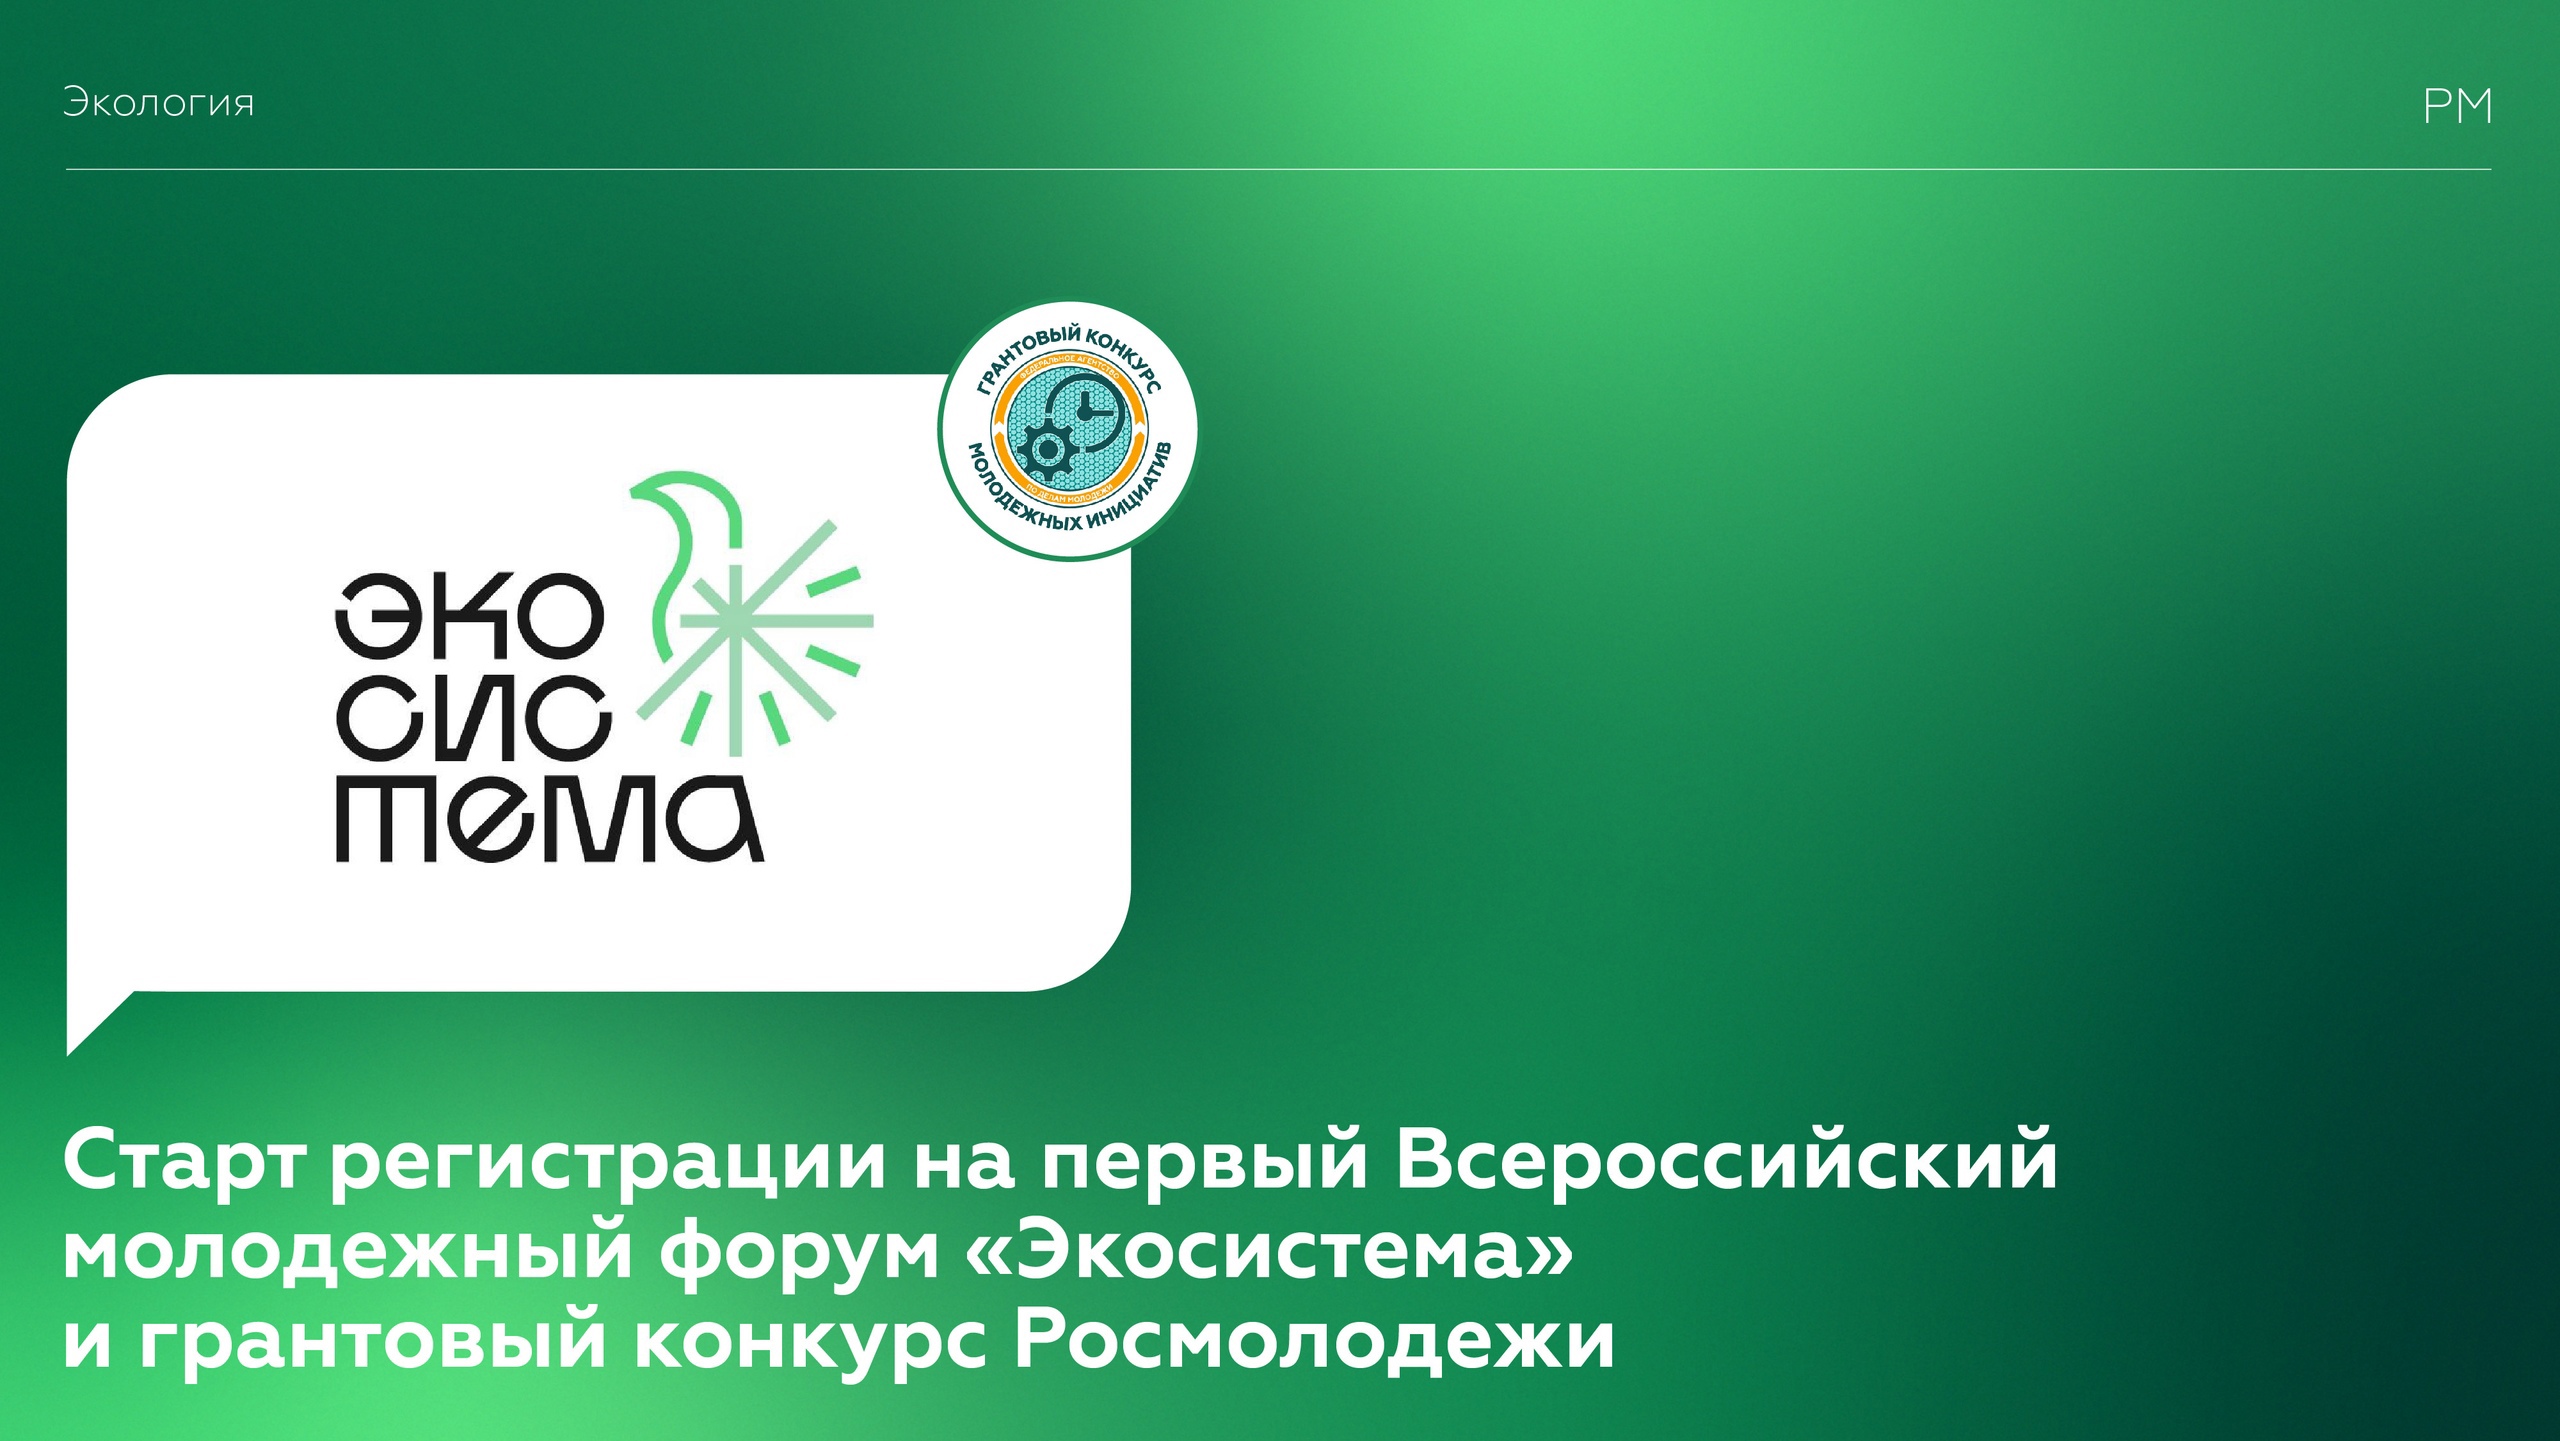 Стартовала регистрация на первый Всероссийский молодежный форум «Экосистема» и грантовый конкурс Росмолодёжи